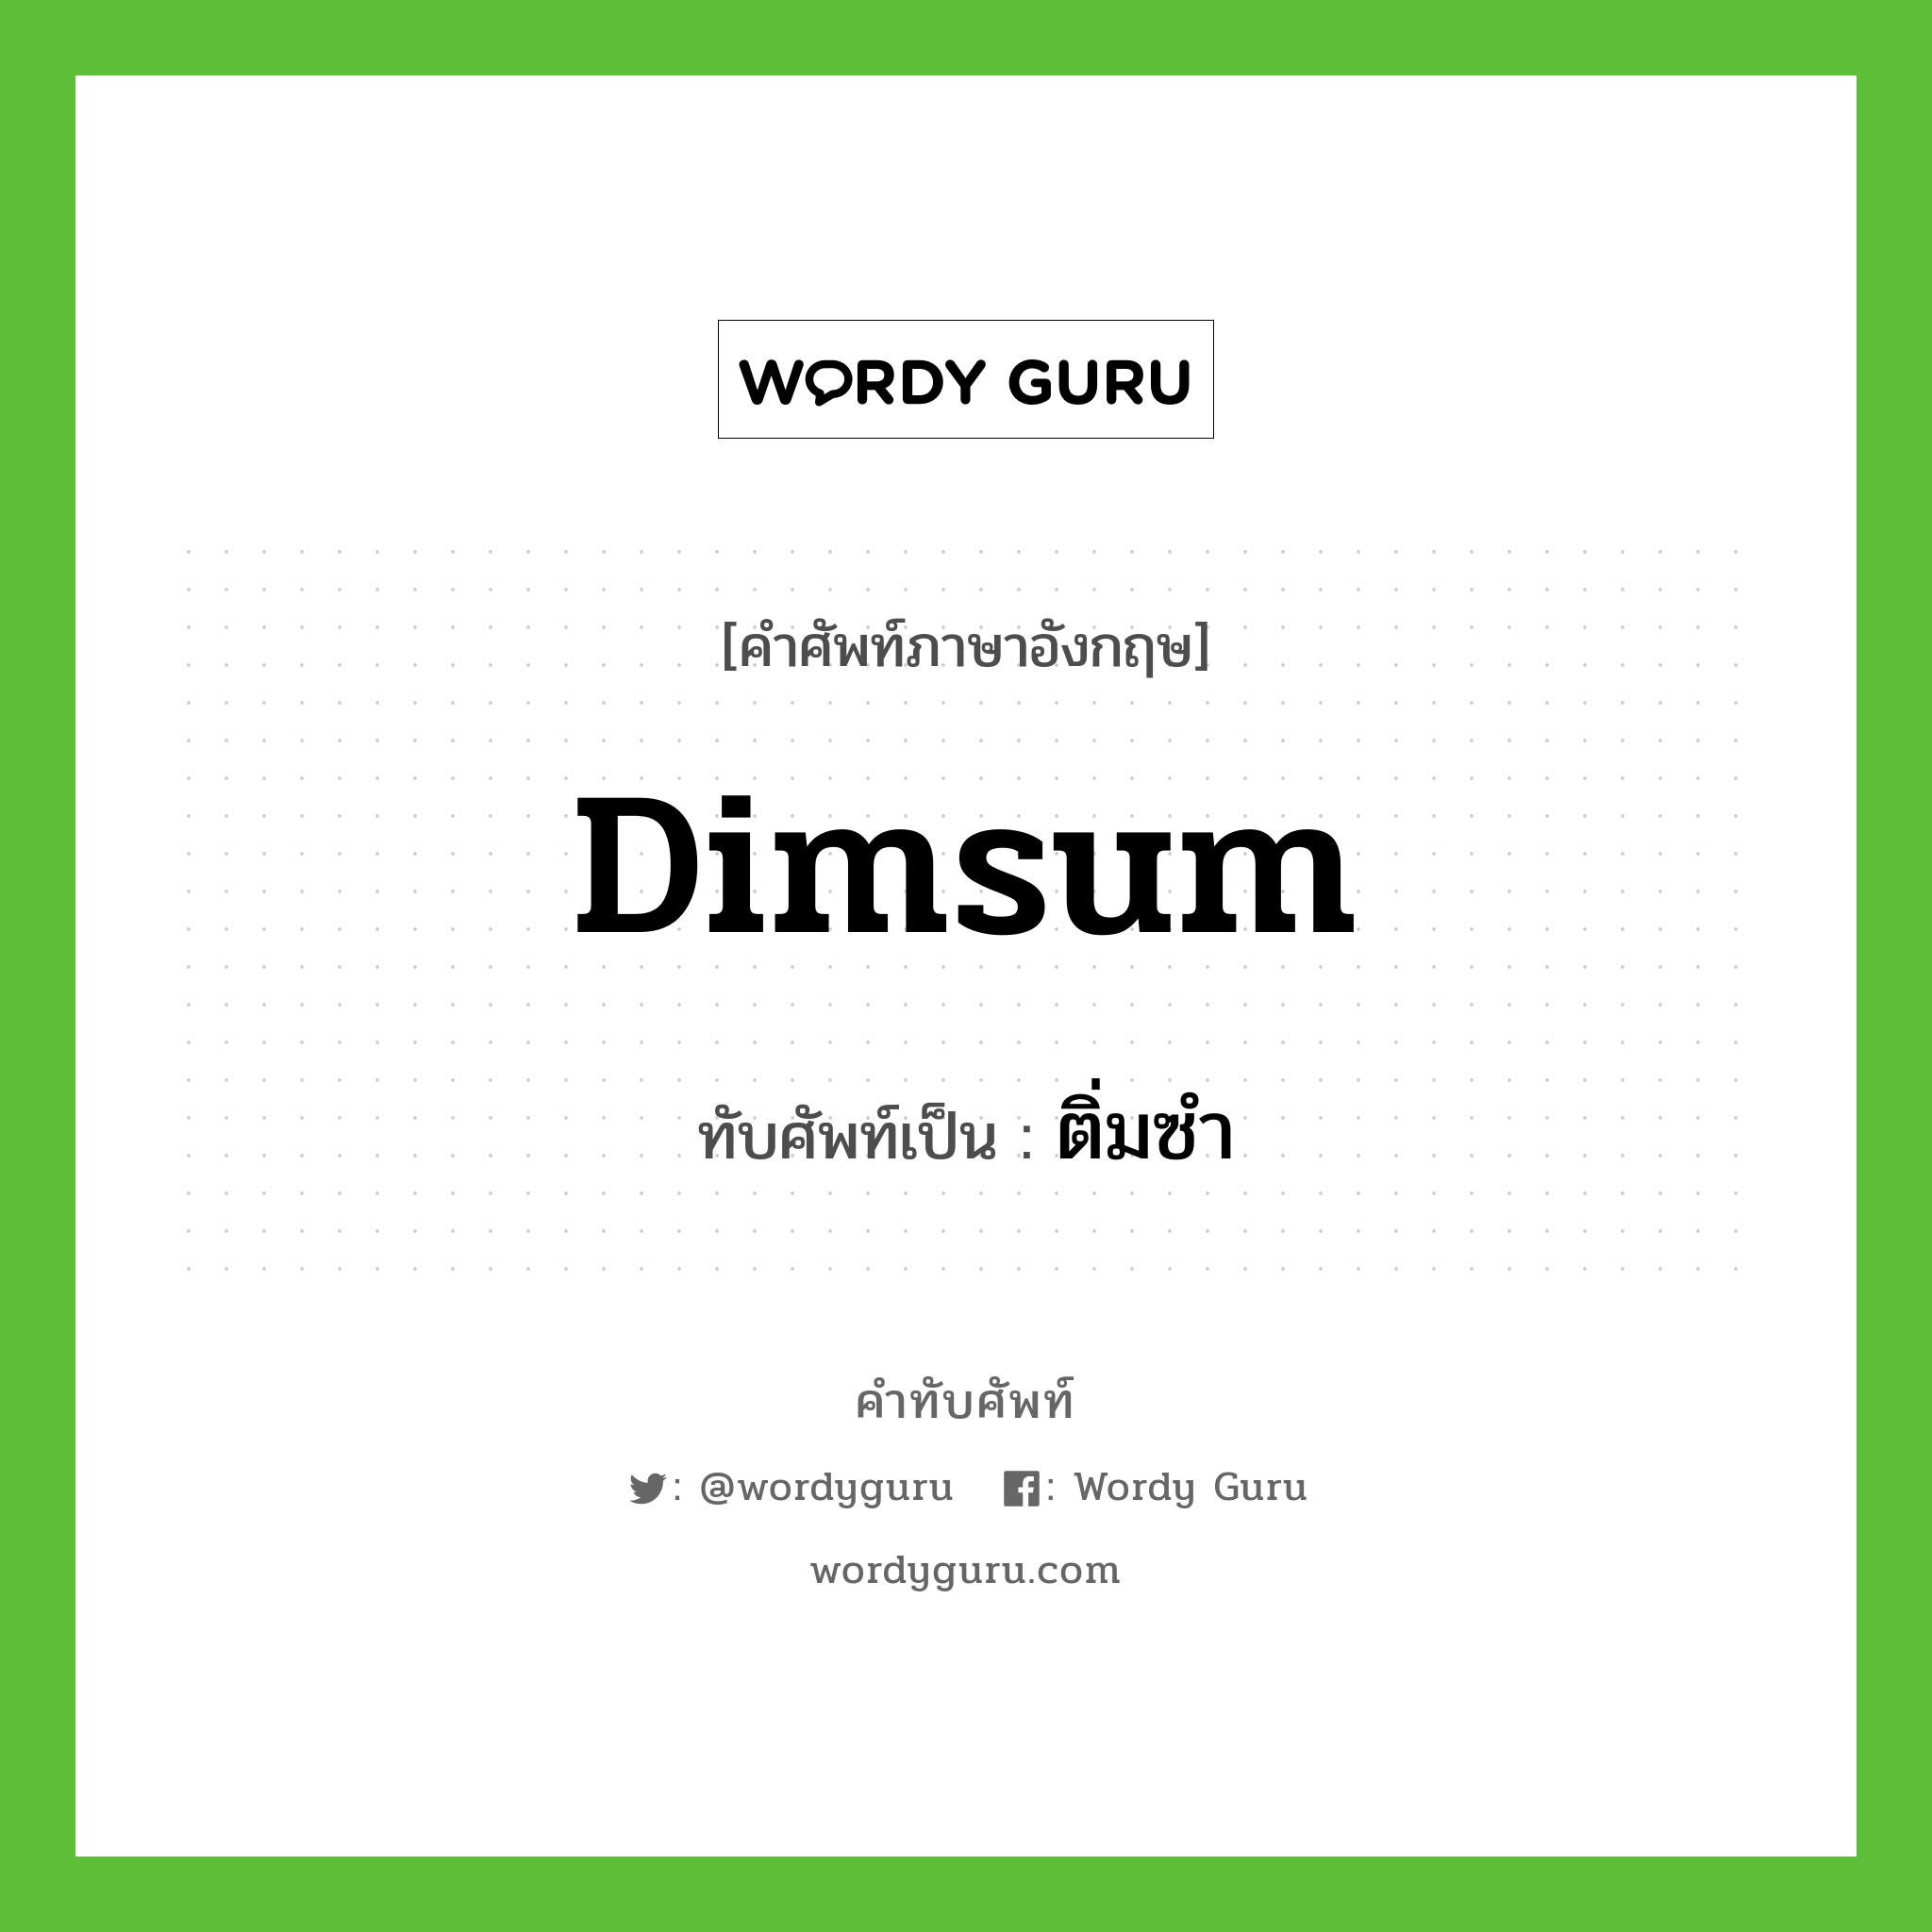 Dimsum เขียนเป็นคำไทยว่าอะไร?, คำศัพท์ภาษาอังกฤษ Dimsum ทับศัพท์เป็น ติ่มซำ